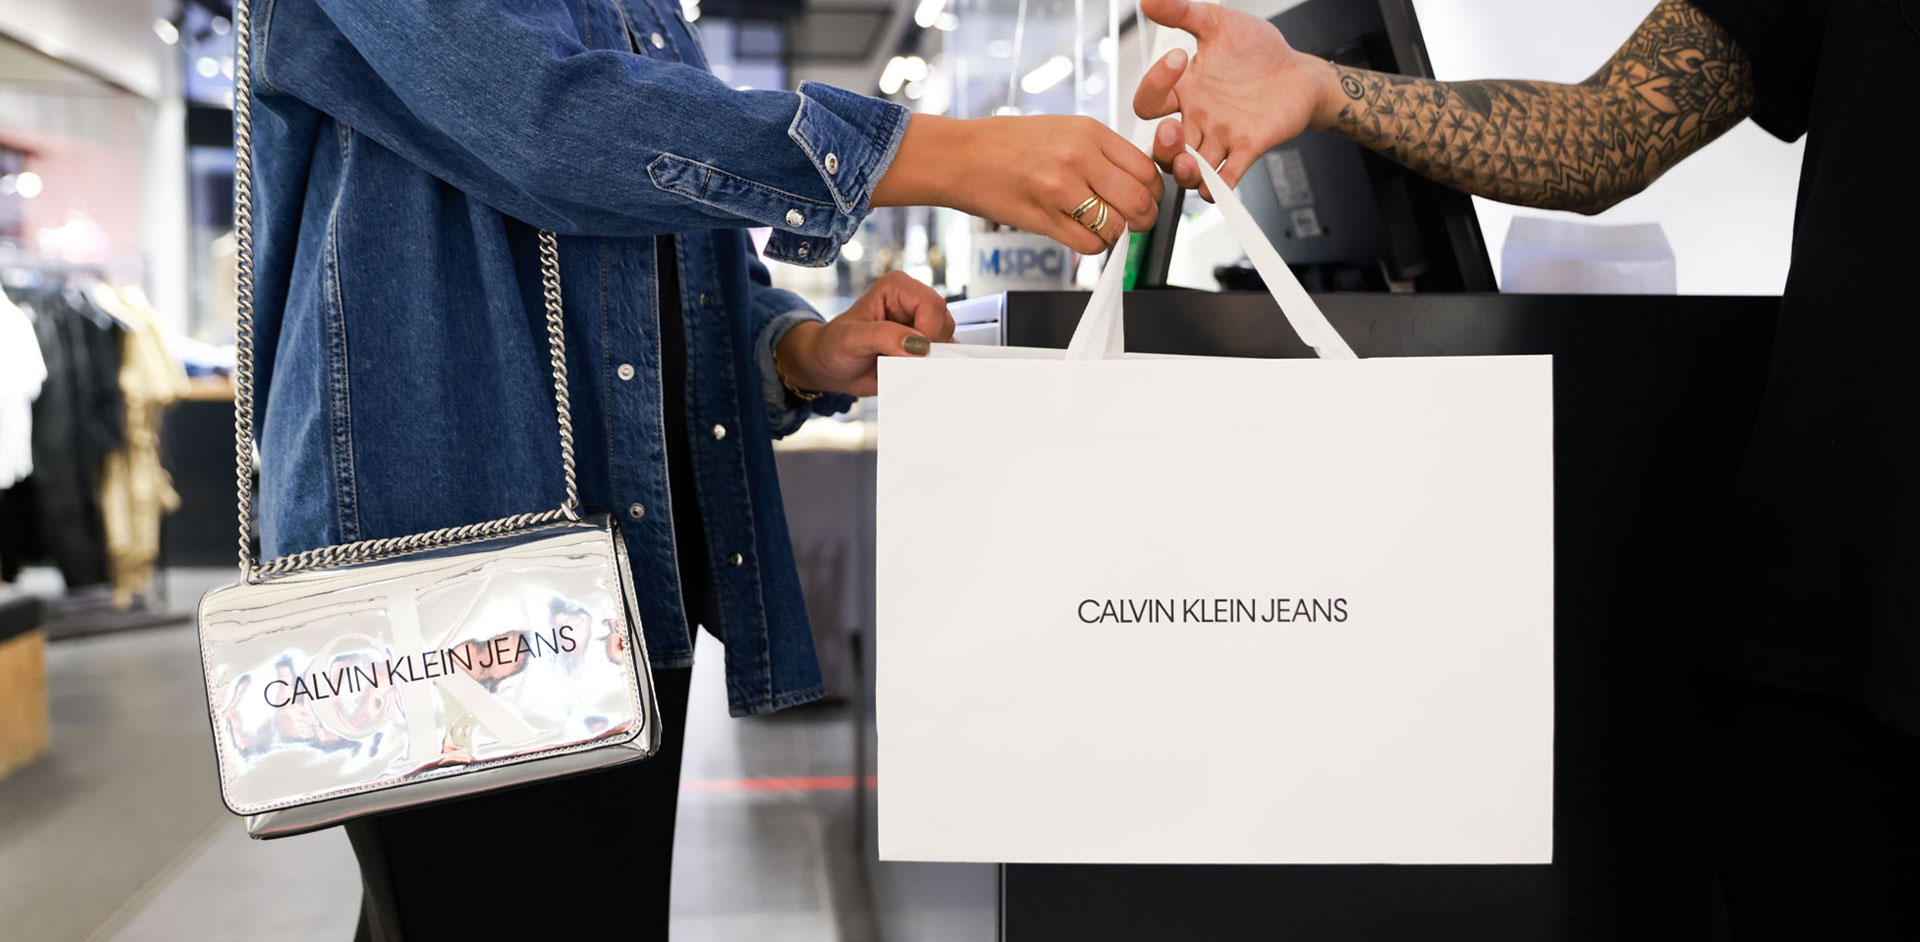 Calvin Klein - Hudson Holdings